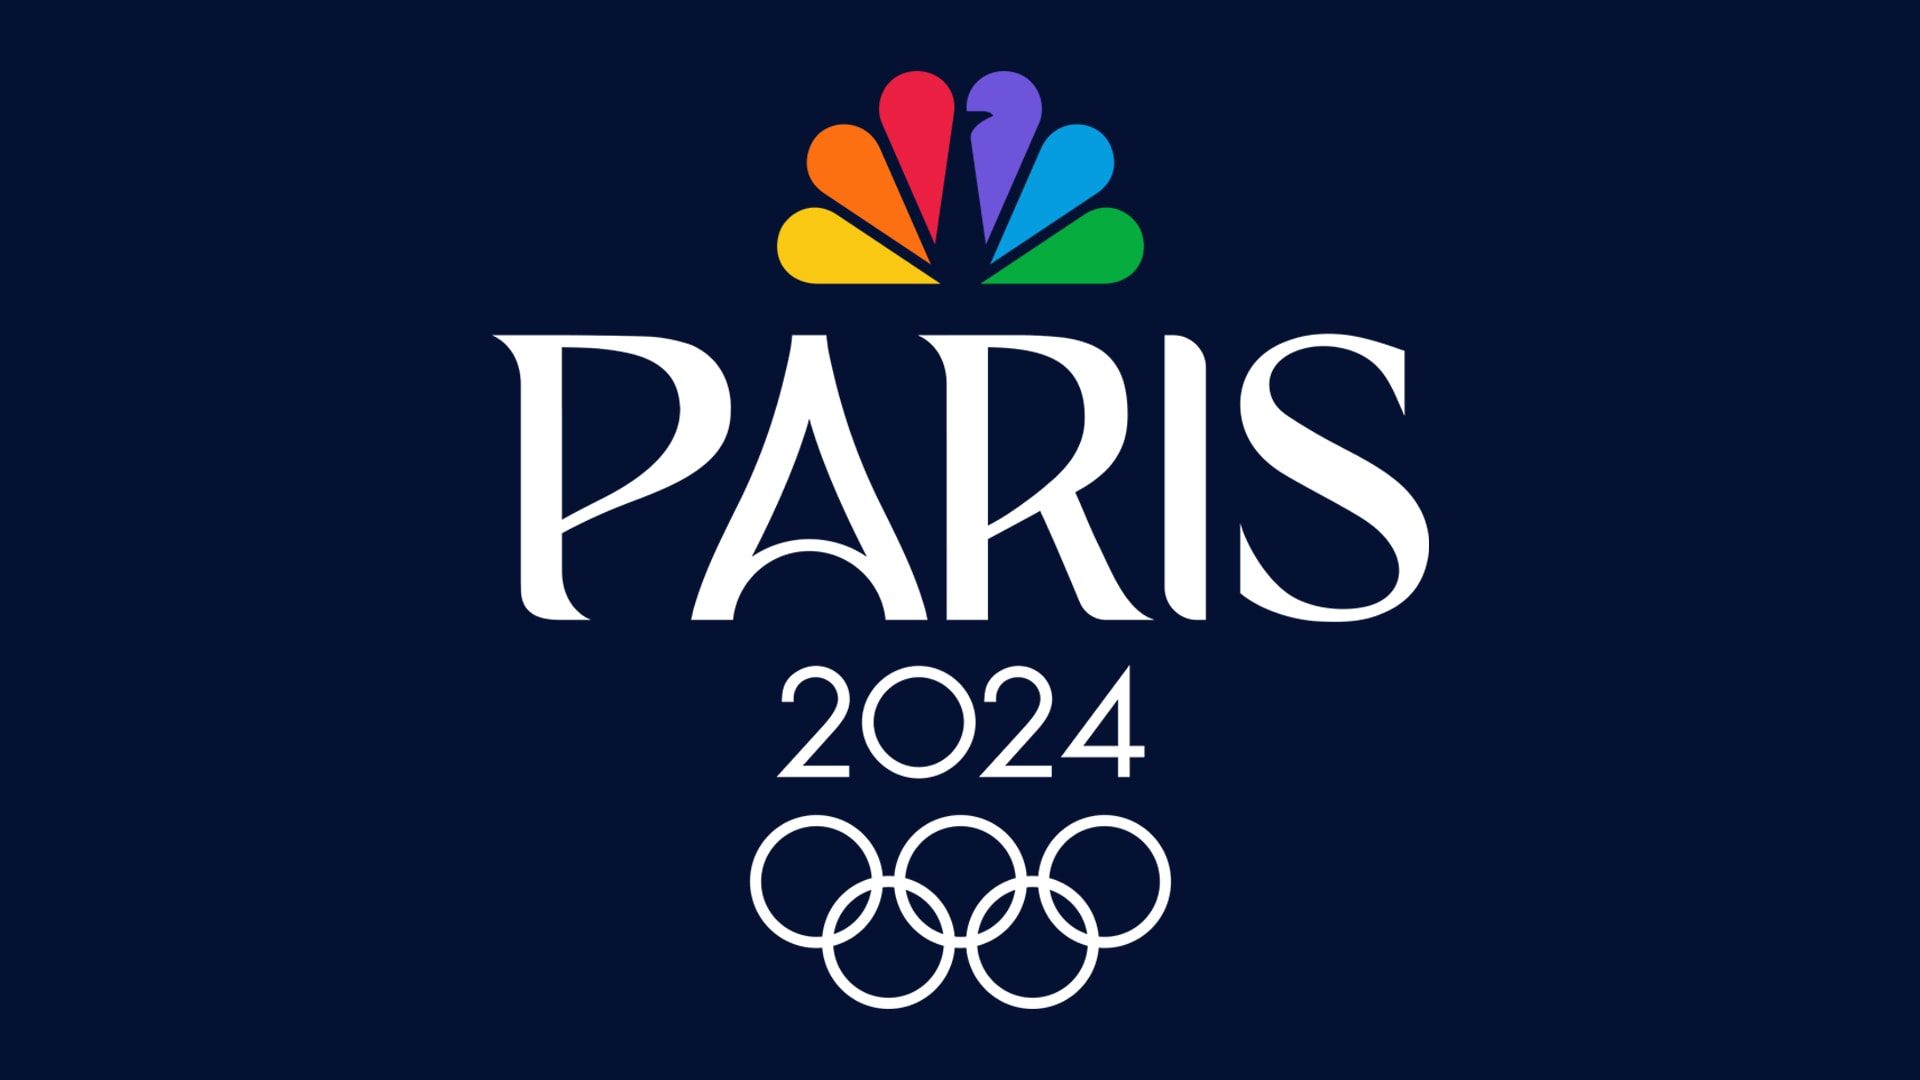 2024 Olympics Logo